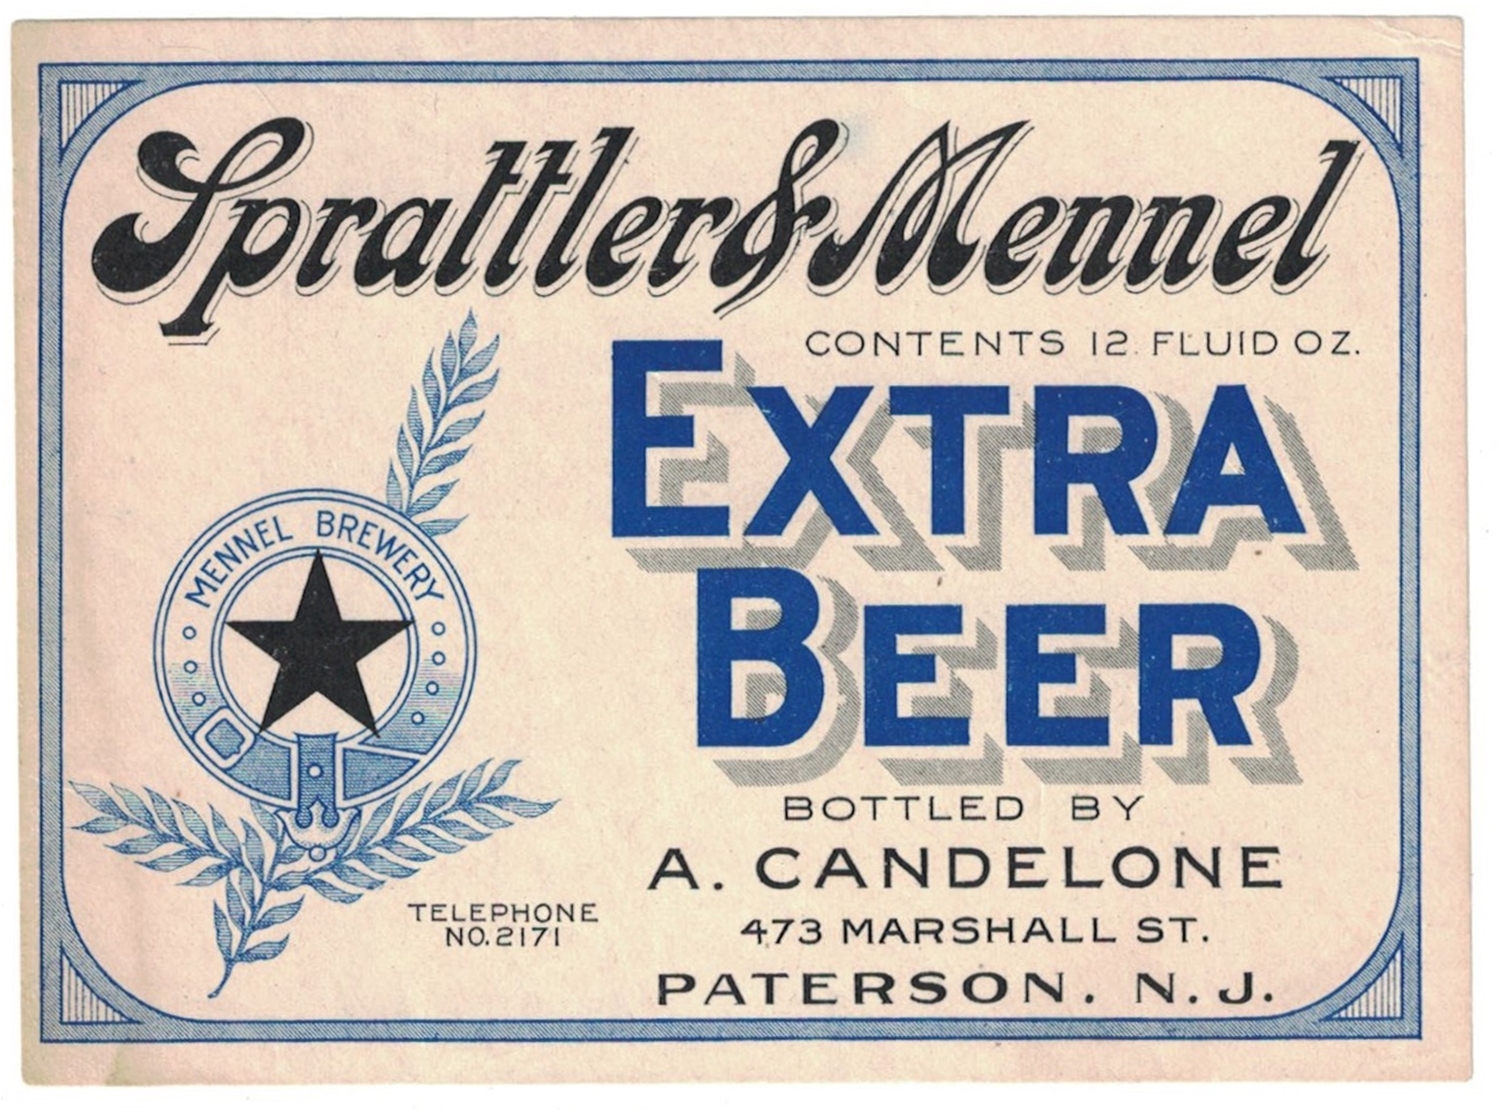 Sprattler & Mennel Extra Beer Label